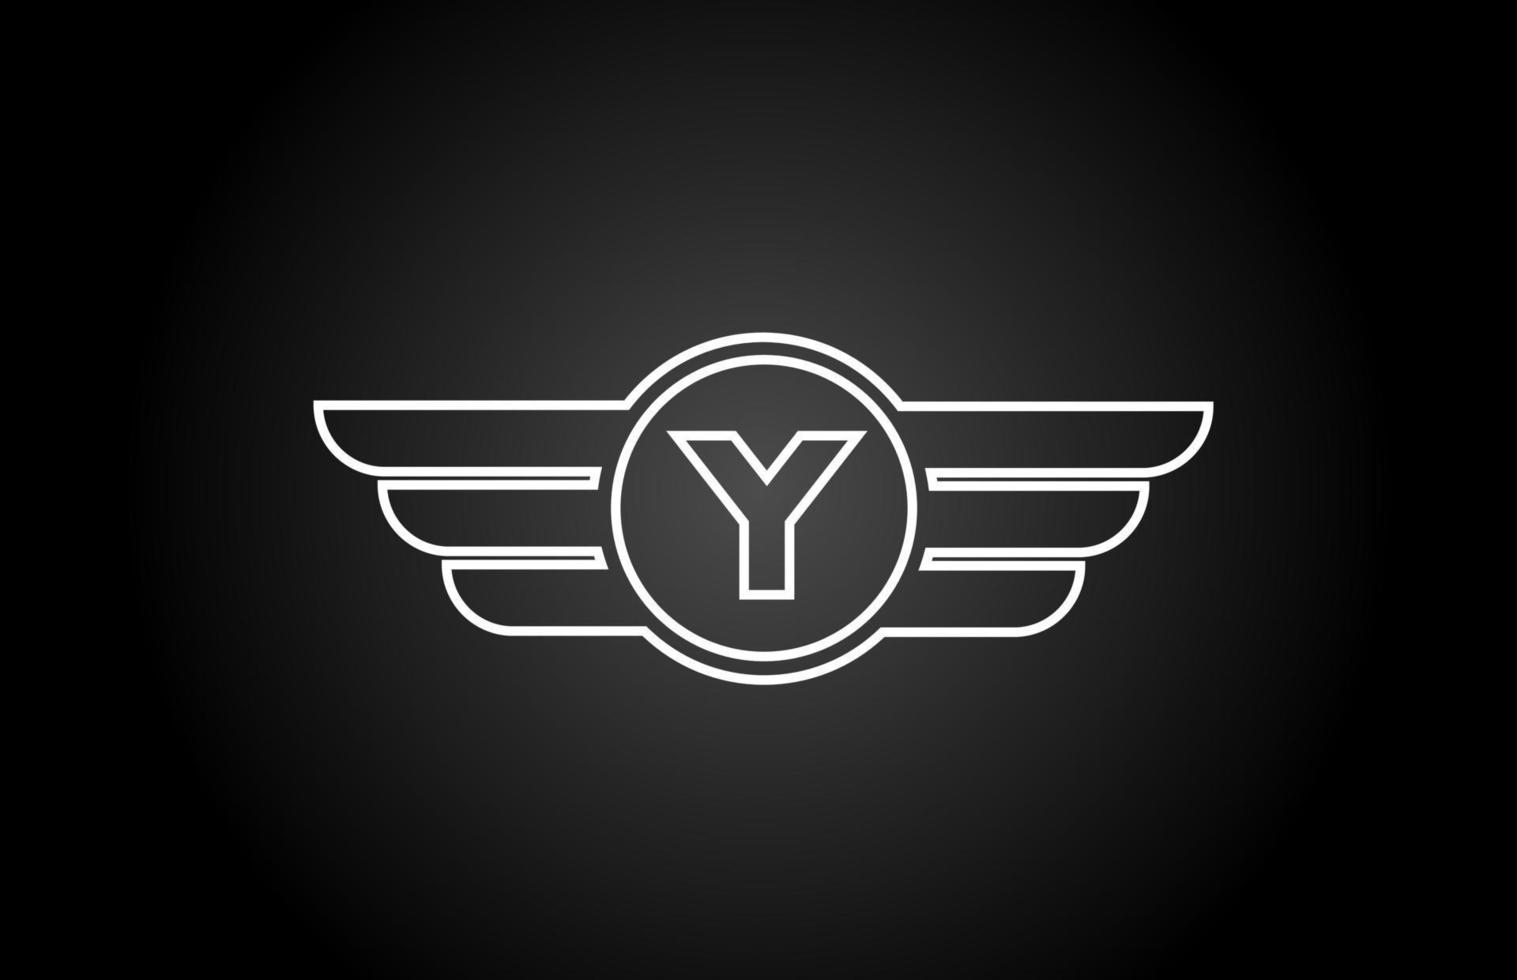 y Alphabet Buchstaben-Logo-Symbol für Unternehmen und Unternehmen mit schwarz-weißem Linien-Flügel-Design vektor